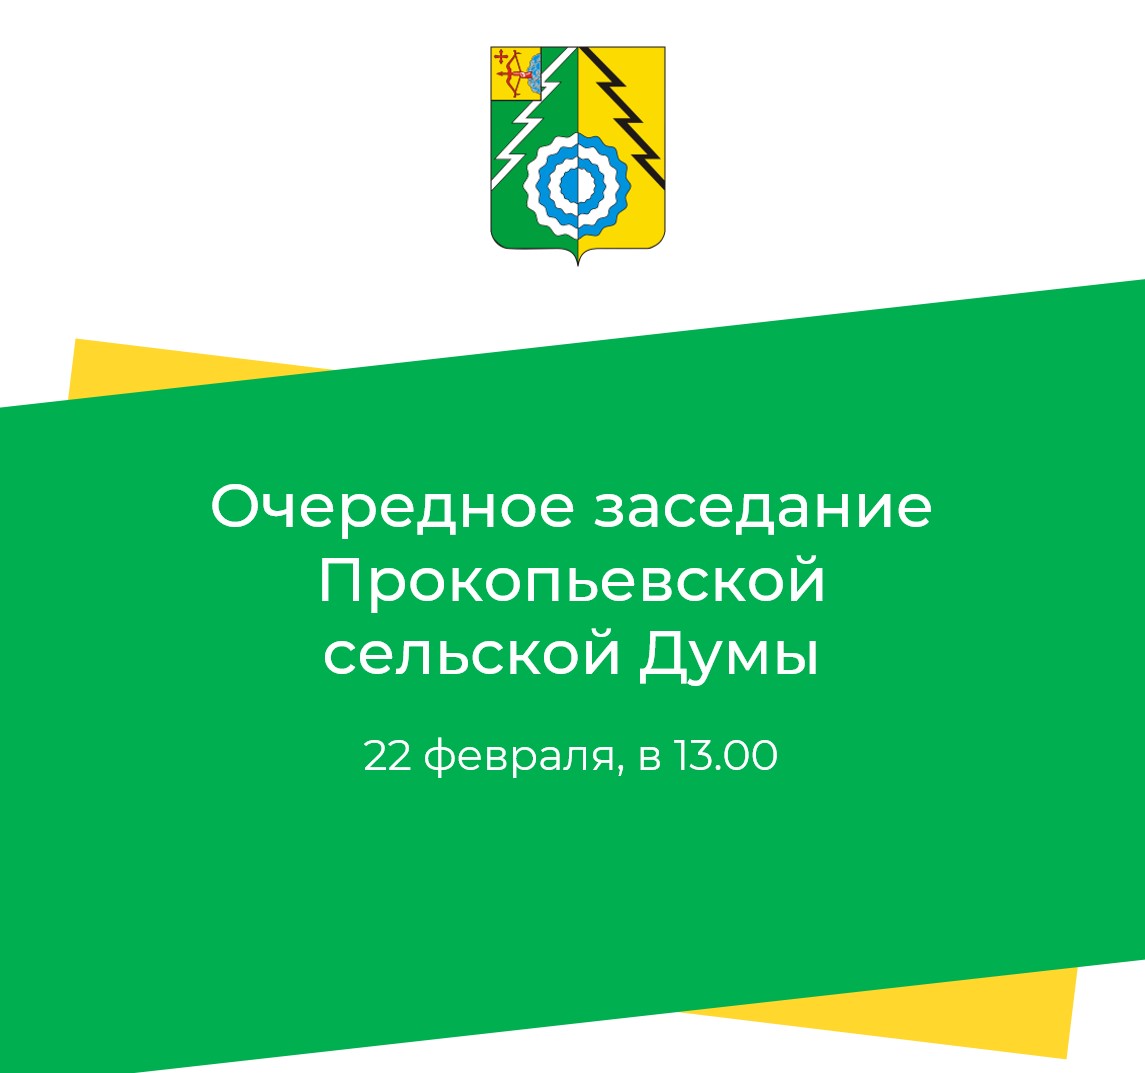 Очередное заседание Прокопьевской сельской Думы пятого созыва.